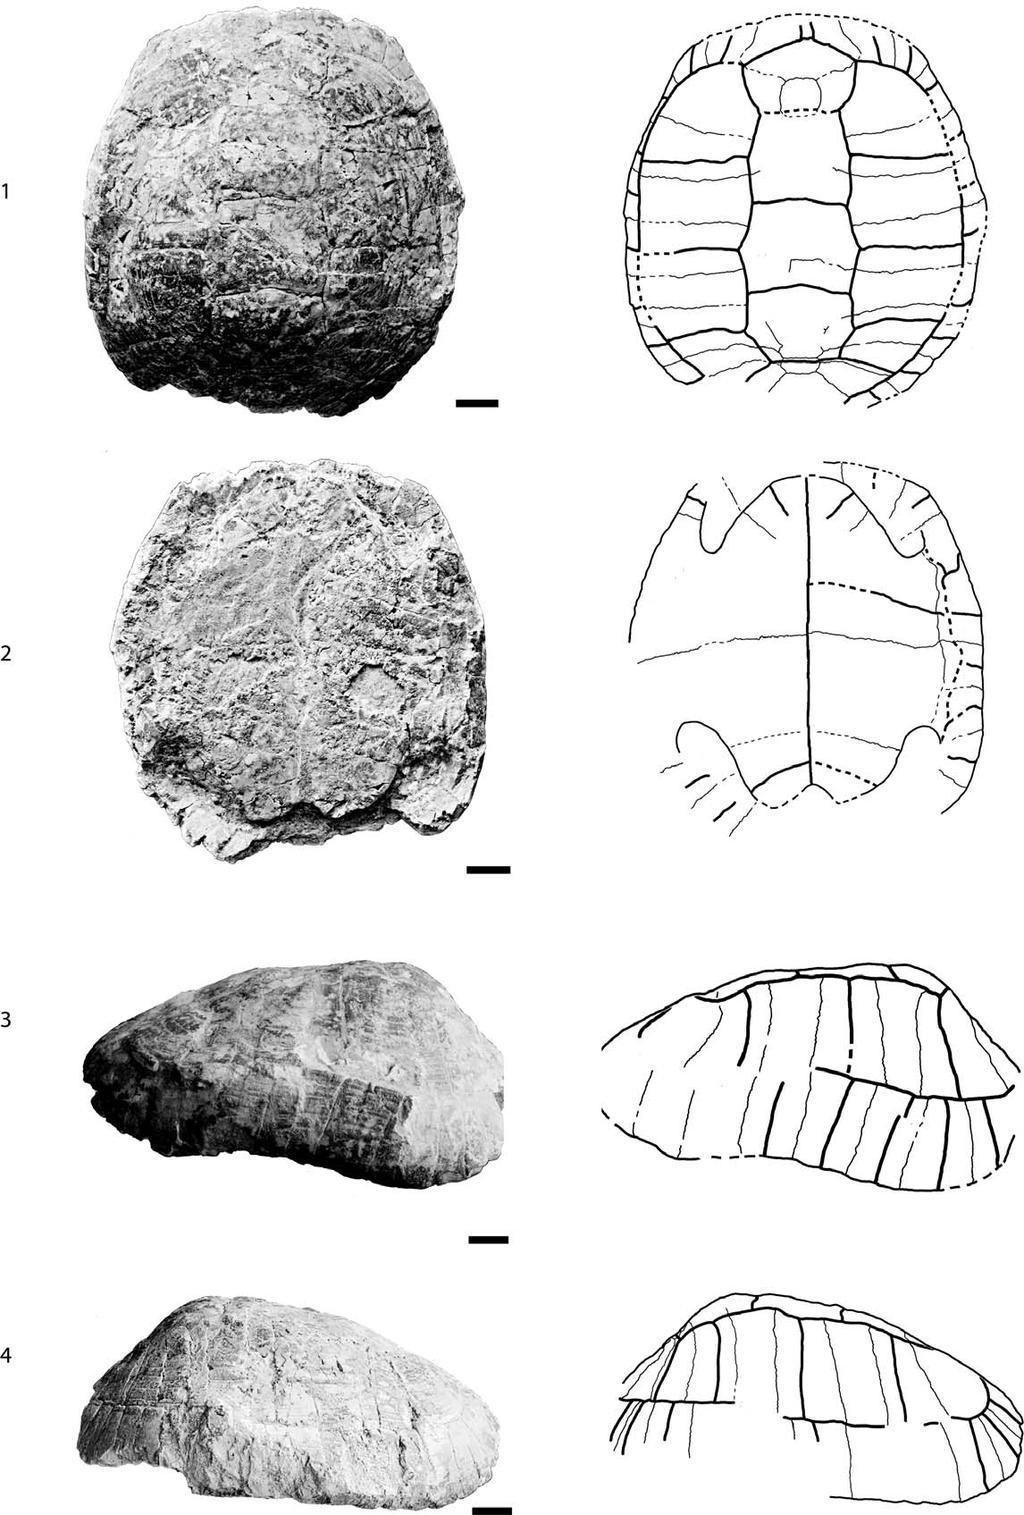 954 JOURNAL OF PALEONTOLOGY, V. 88, NO. 5, 2014 FIGURE 4 FFSM 3446.3, Testudo antiqua, middle Miocene of Hohenhöwen, Germany.